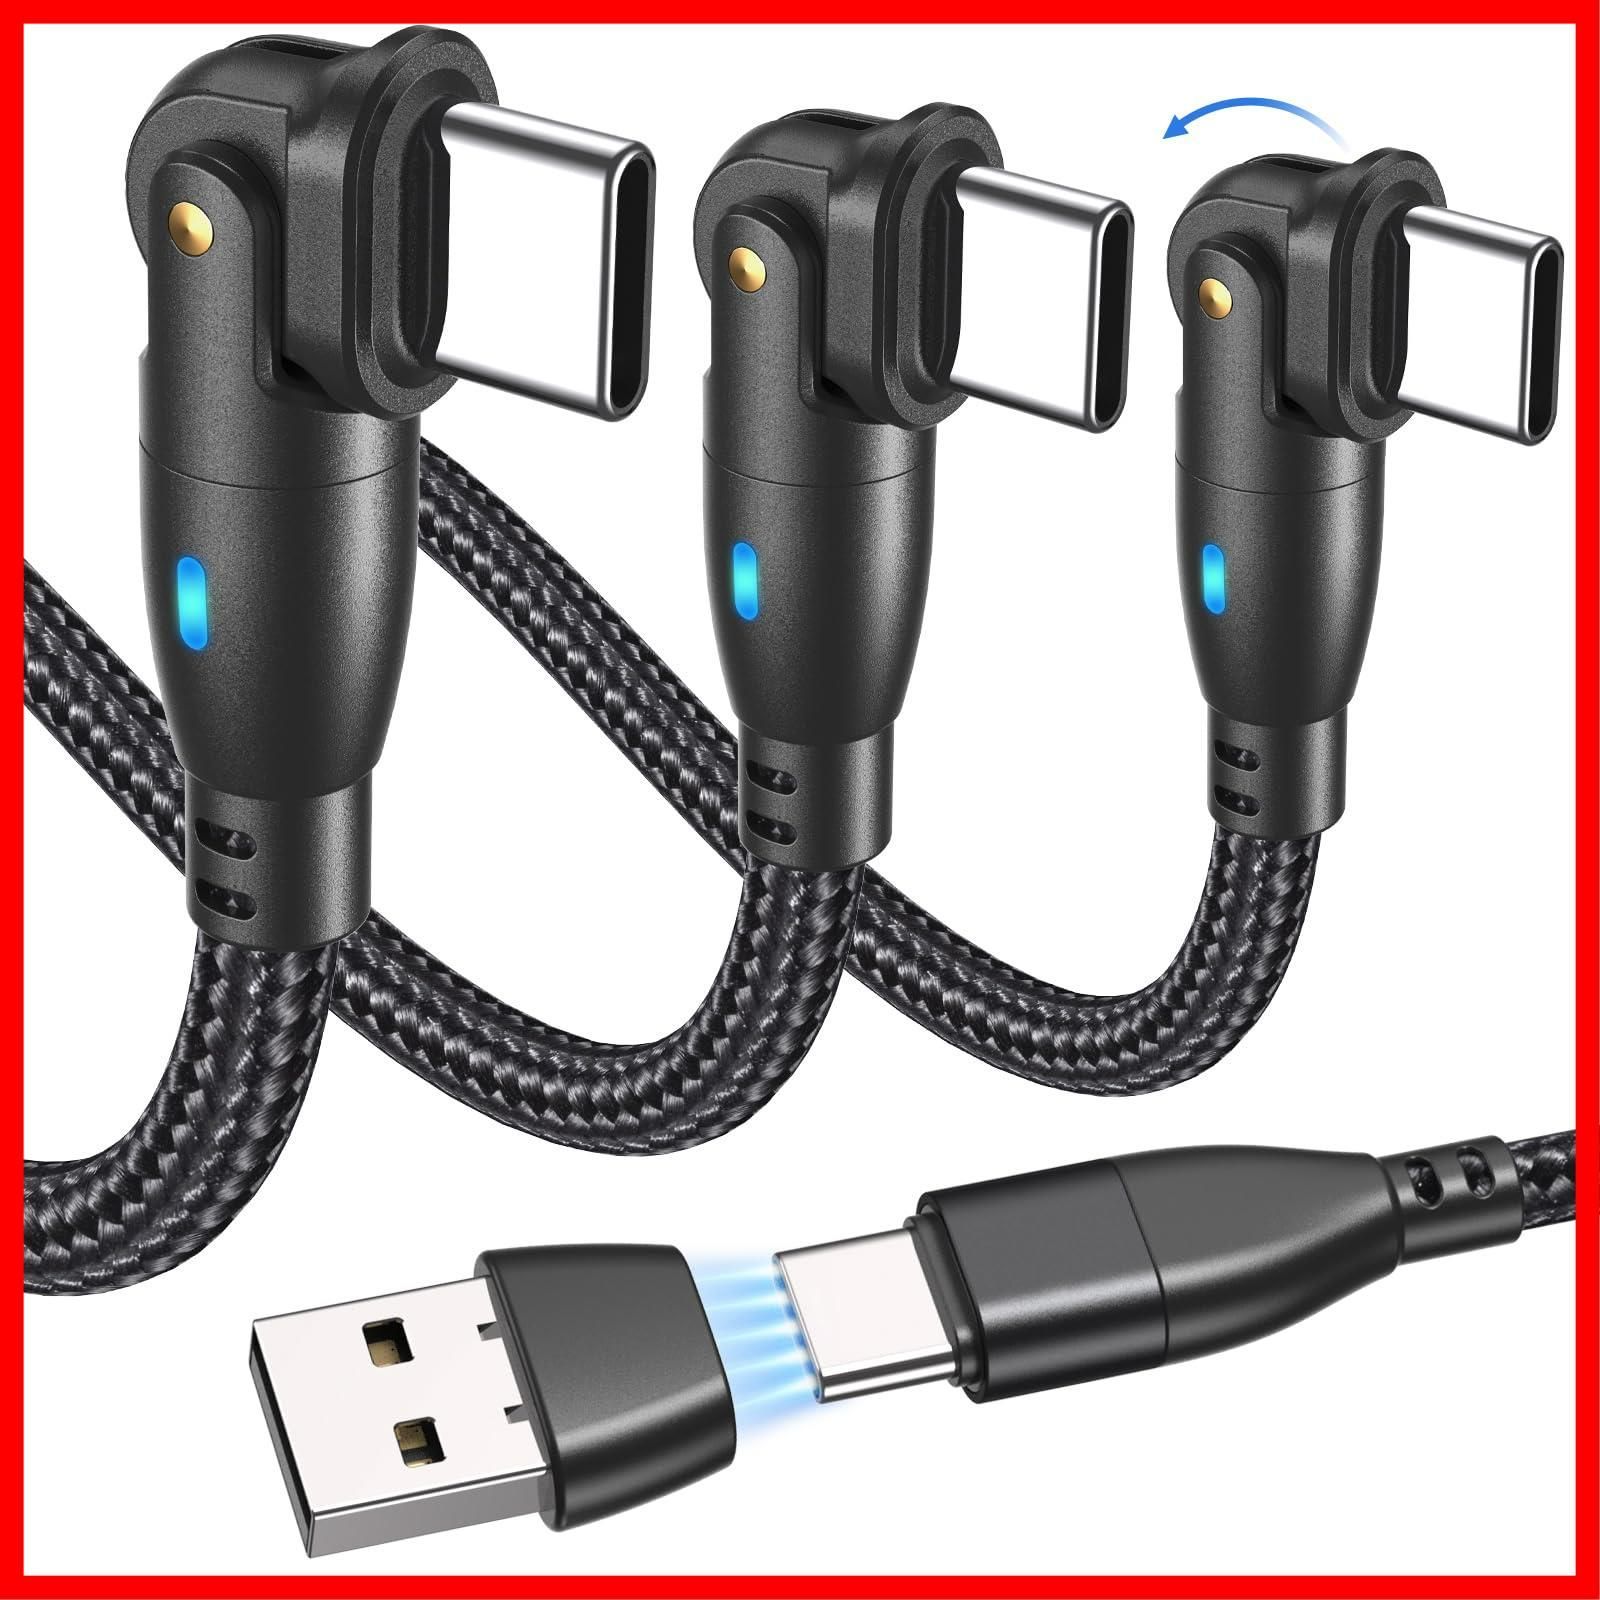 3本 セット USB Type C ケーブル Type-C USBケーブル 充電器 56Kレジスタ実装 1m データ転送 Mac Book Xperia XZ Xperia X Compact 等多機種対応